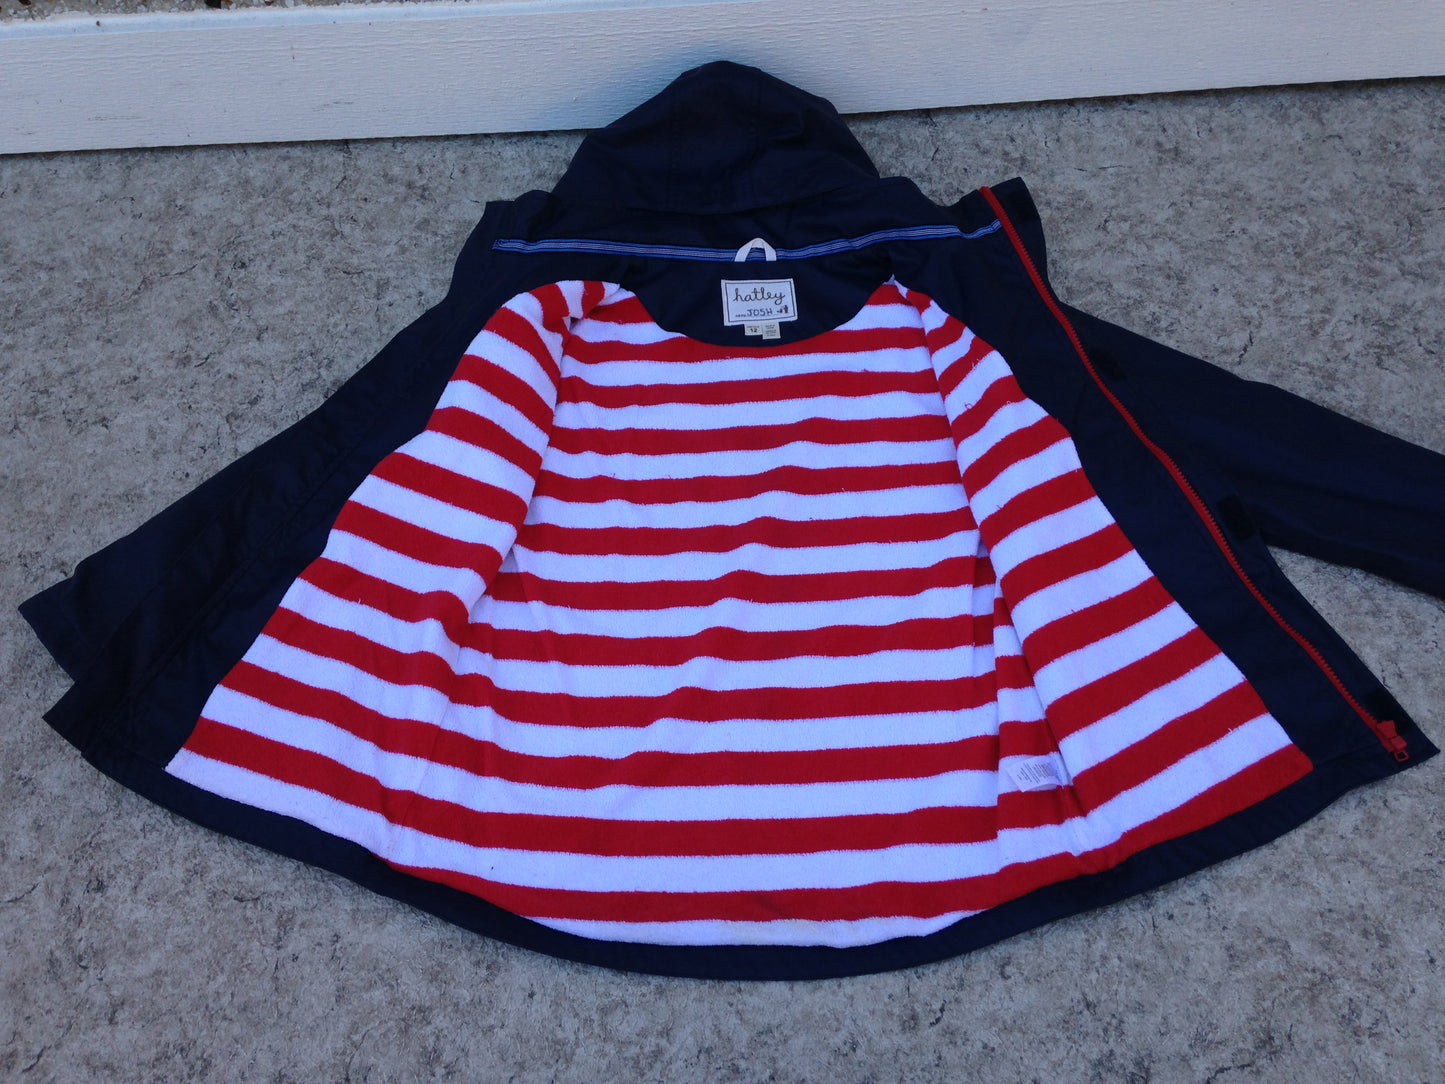 Rain Coat Child Size 12 Hatley Navy Red Waterproof